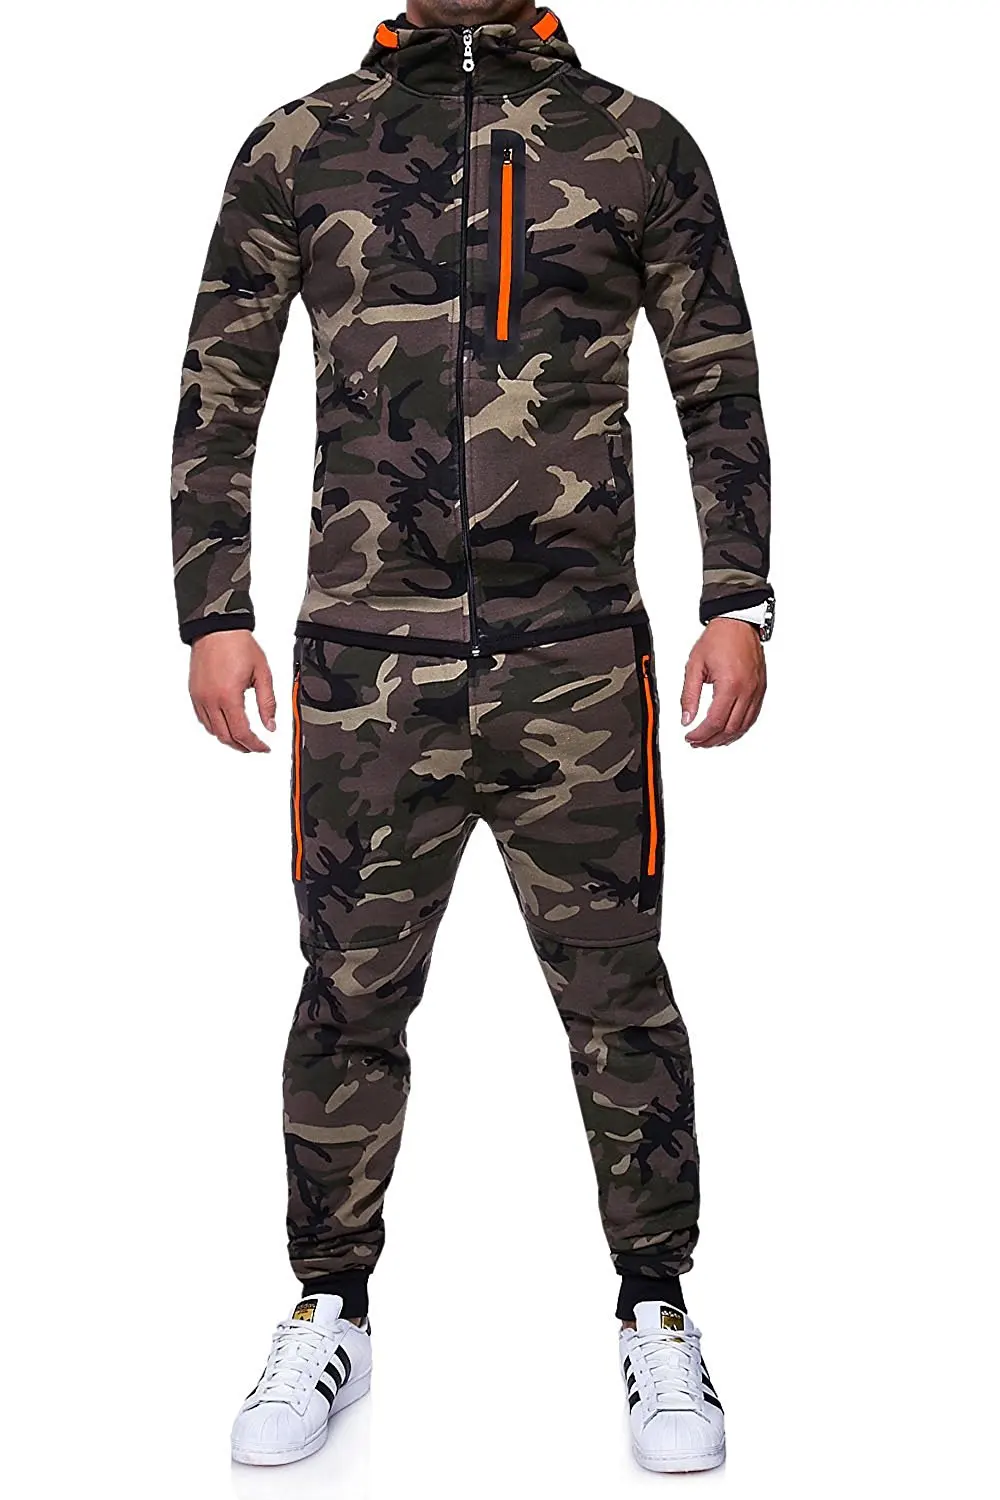 ZOGAA мужские комплекты спортивный костюм термобель камуфляжная куртка Камуфляжный суперсухой спортивный костюм